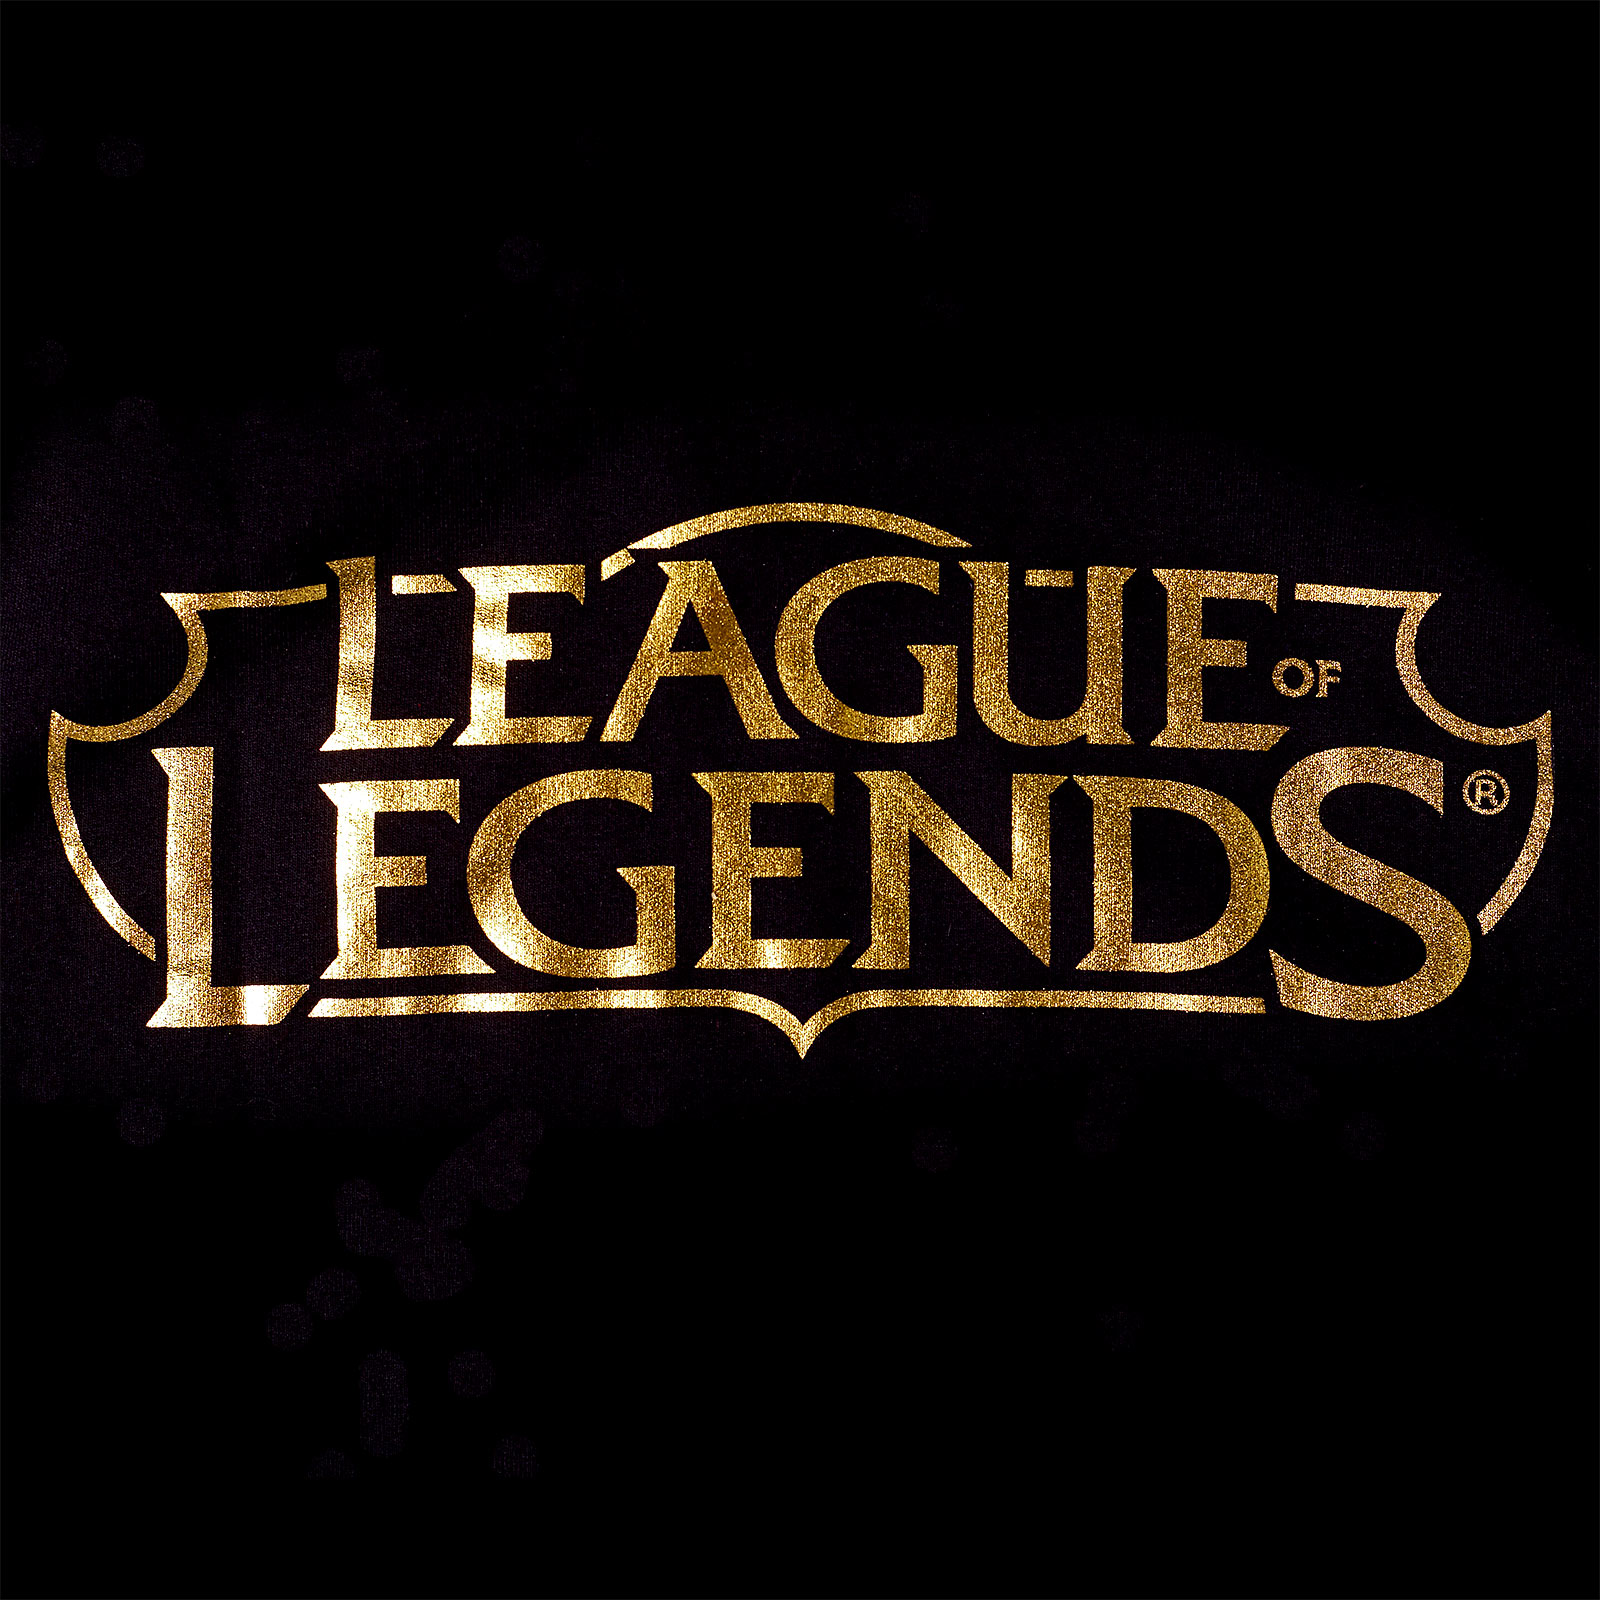 League of Legends - Sweat à capuche Logo noir